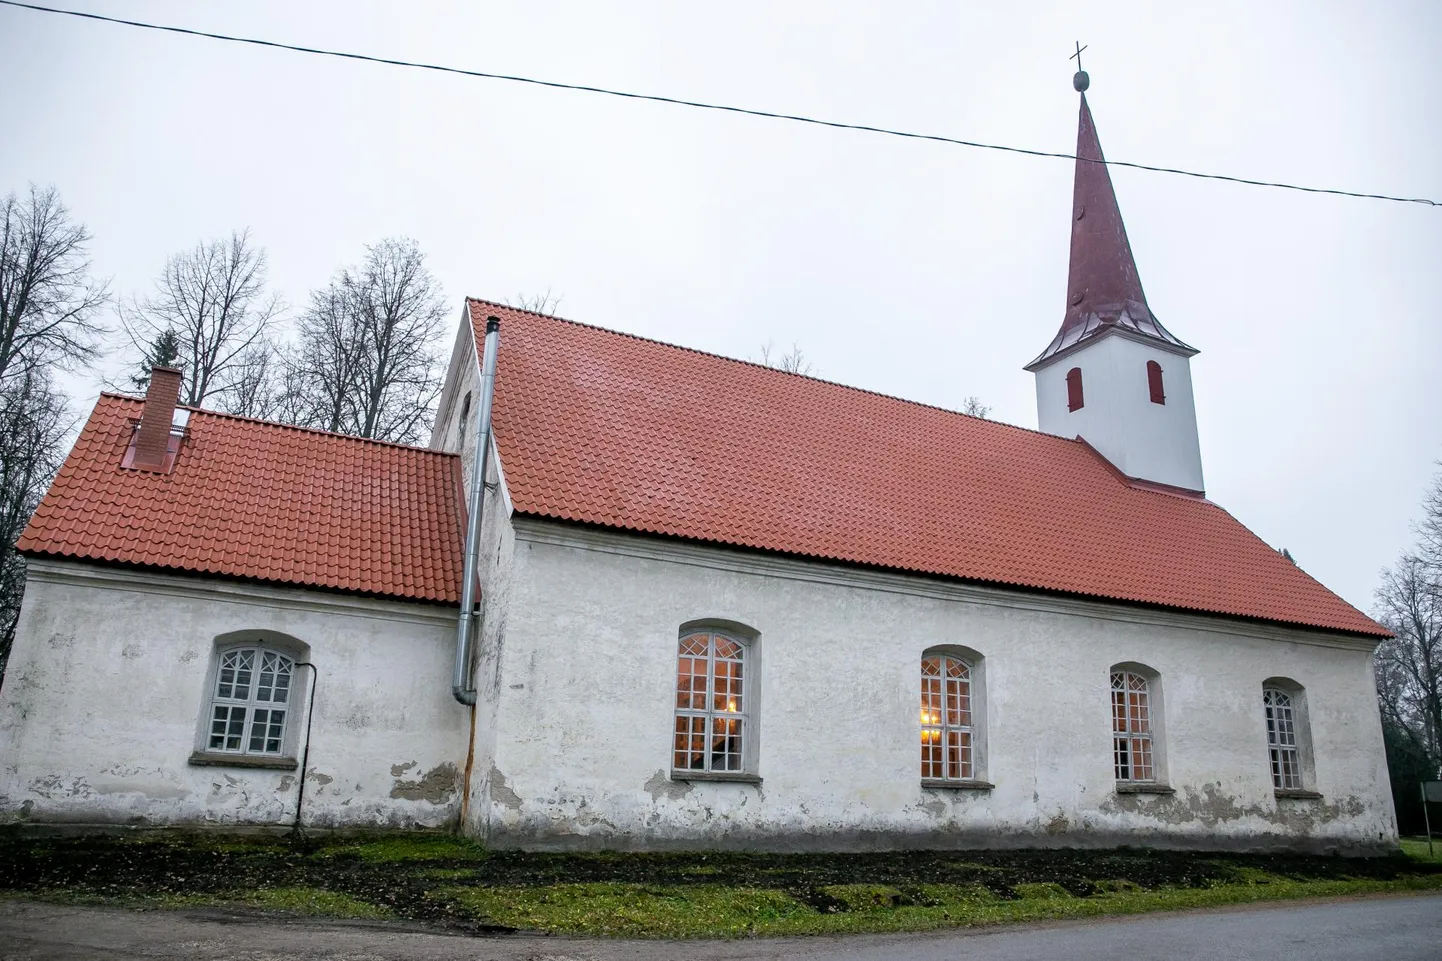 Vändra 231 aasta vanust kirikut ehib uus keraamilistest tellistest katus.